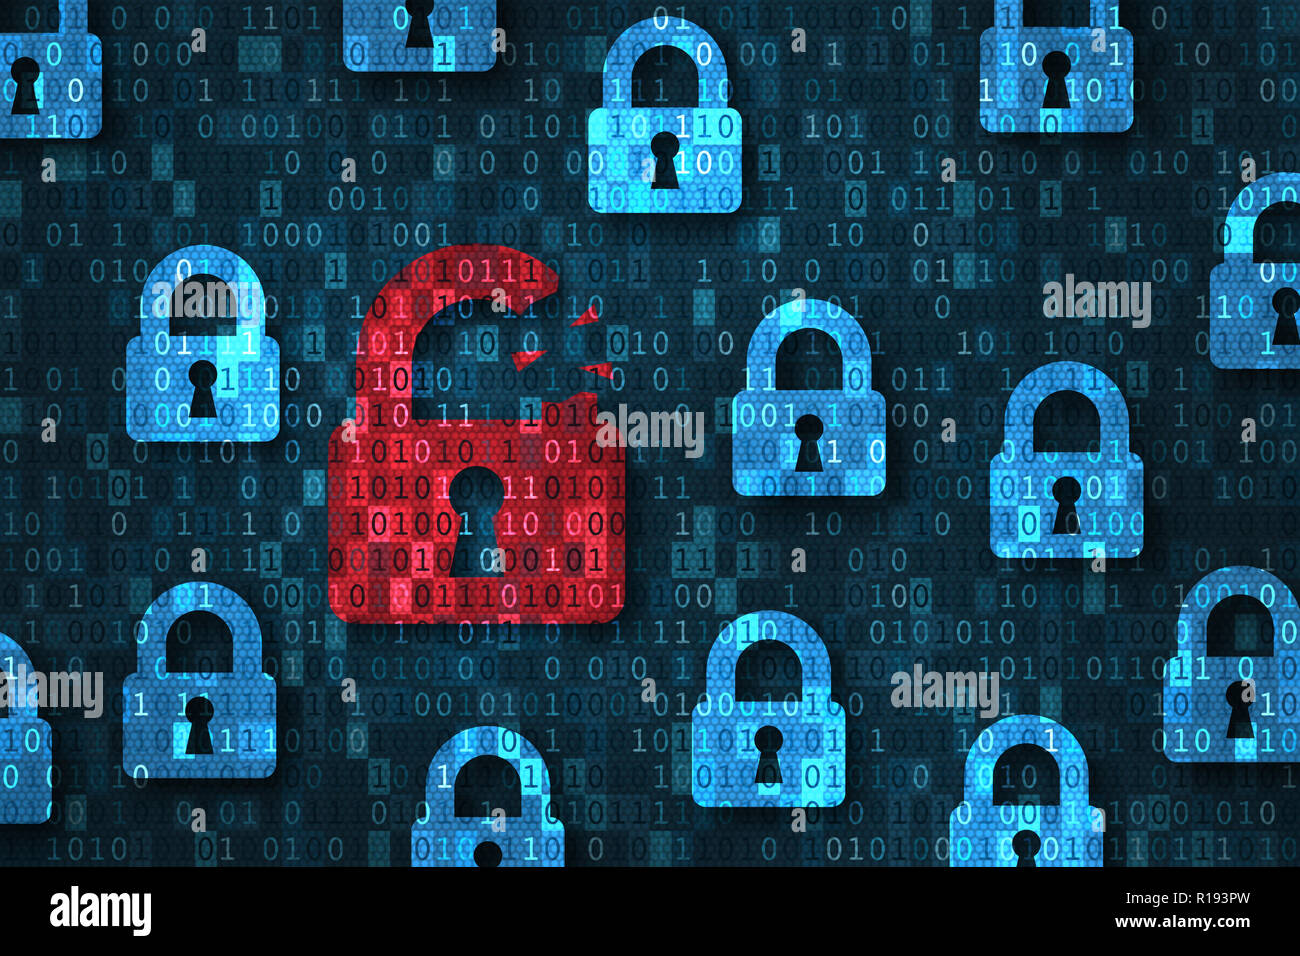 Verletzung der Sicherheit, System gehackt Alert mit Red Broken Vorhängeschloss angezeigt unsichere Daten unter Abwehr von Cyberattacken, Gefährdeten Zugang, Passwort, vi Stockfoto